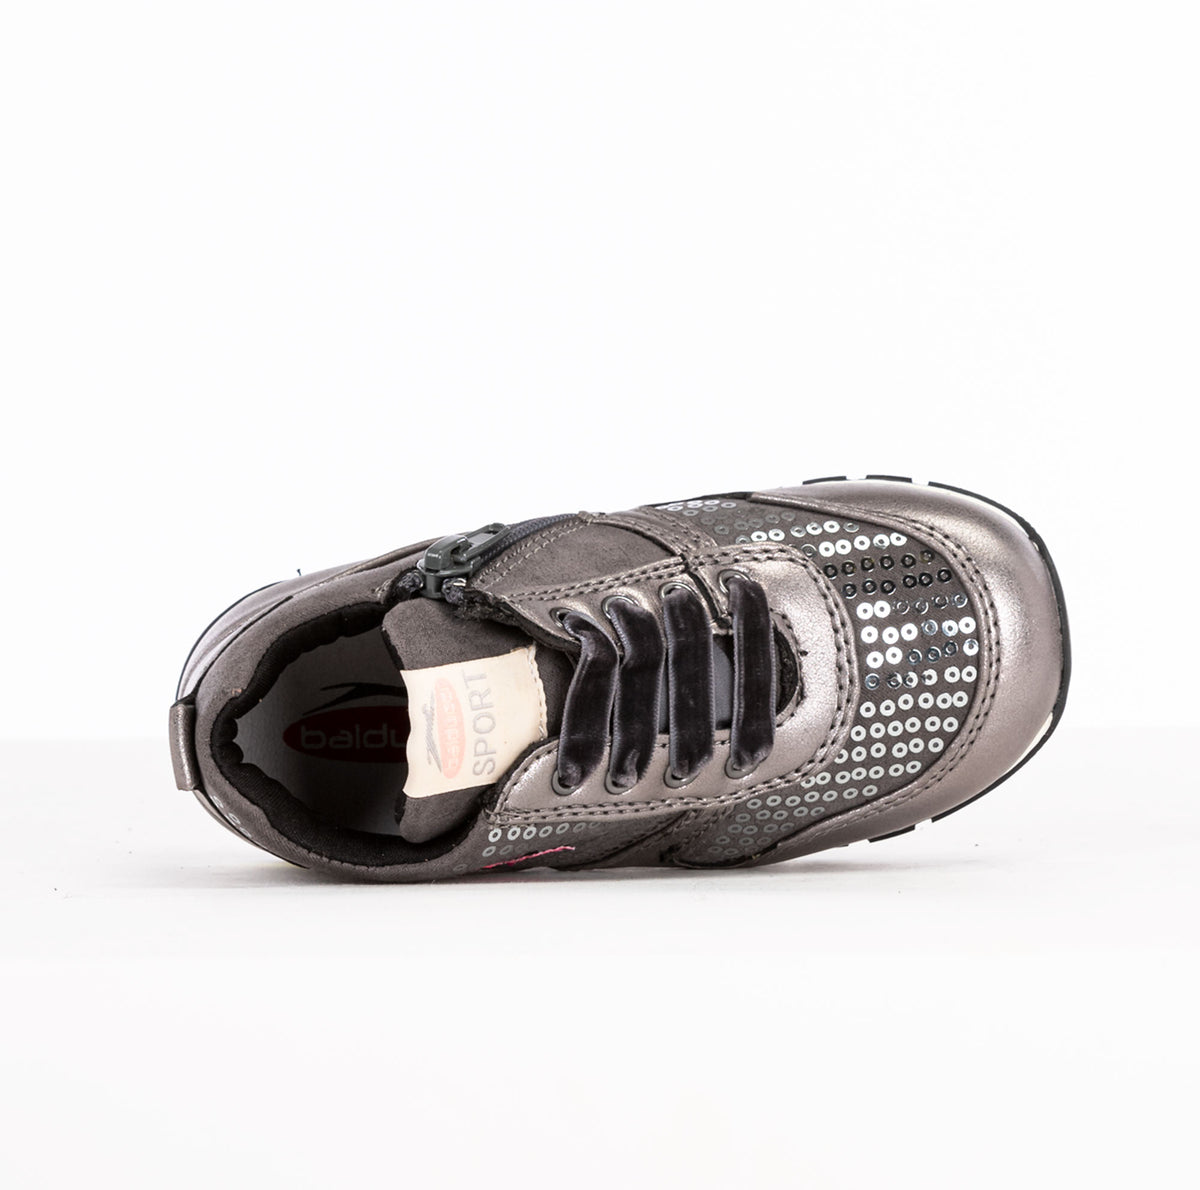 BALDUCCI | Sneakers Bambina | 69980